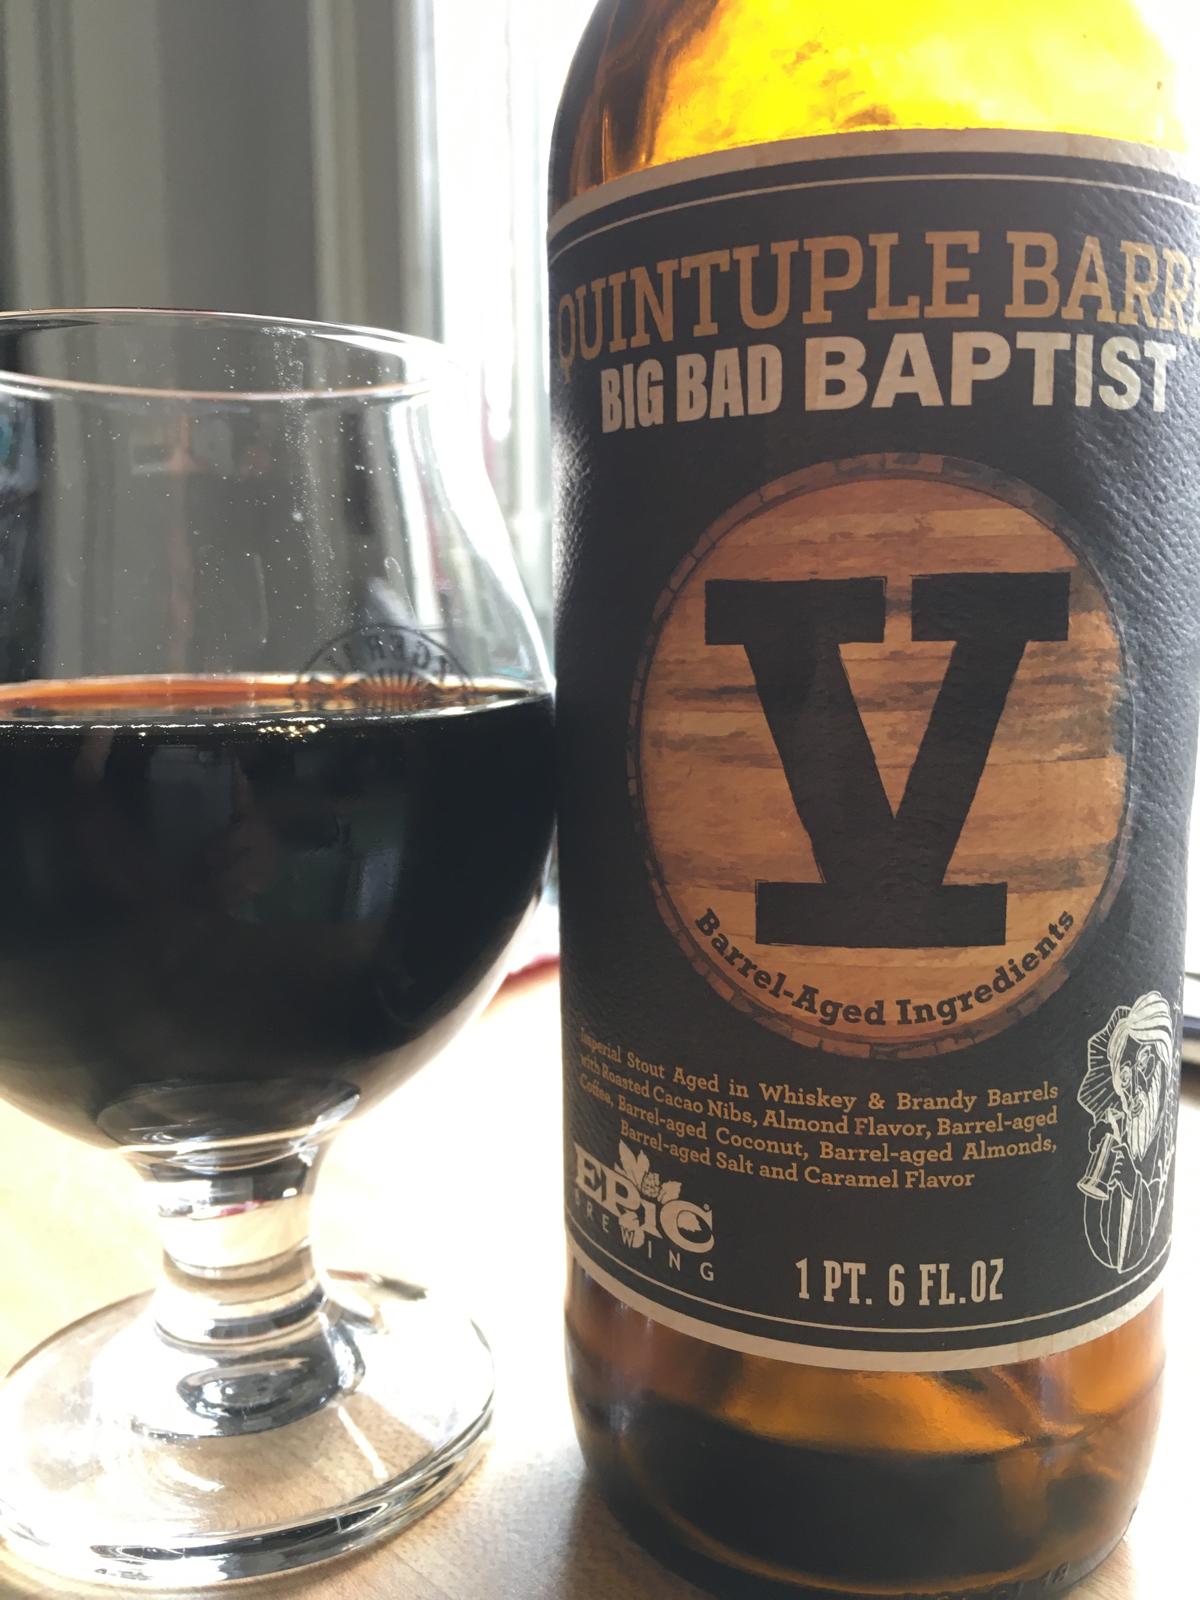 Big Bad Baptist (Quintuple Barrel 2019)